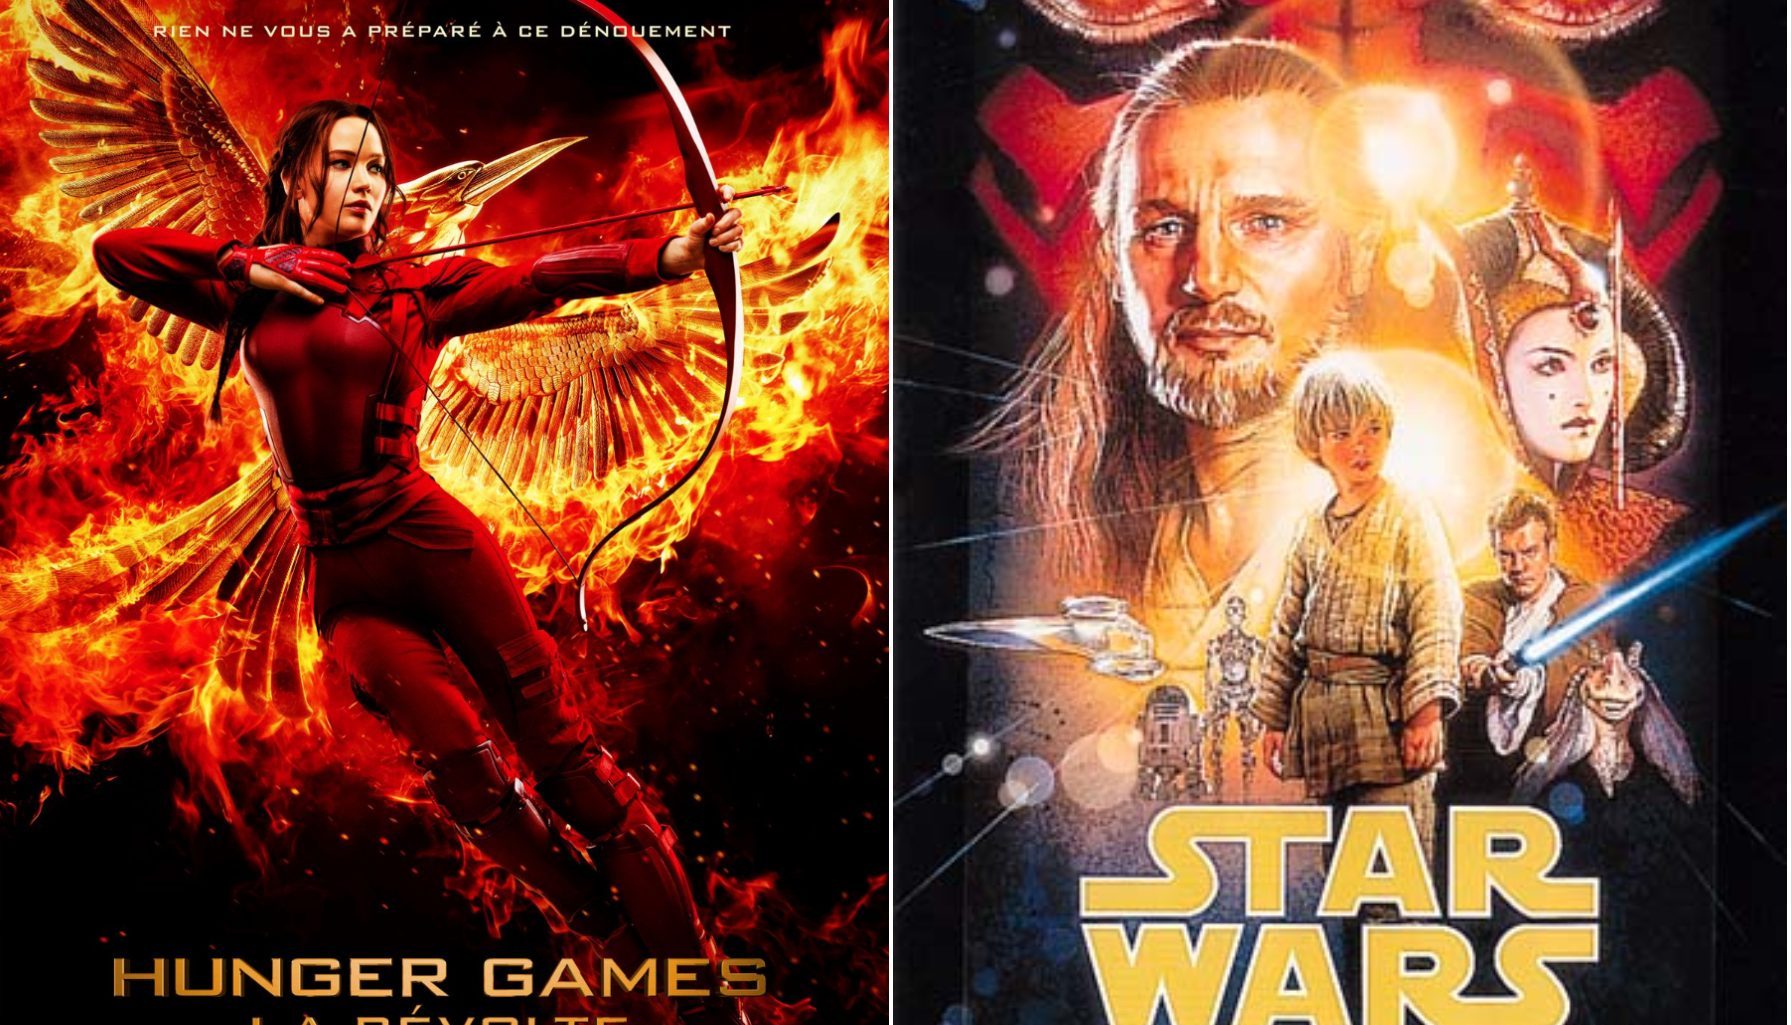 Ce soir Hunger Games ou Star Wars épisode 1 ? Suivez le guide (tv)